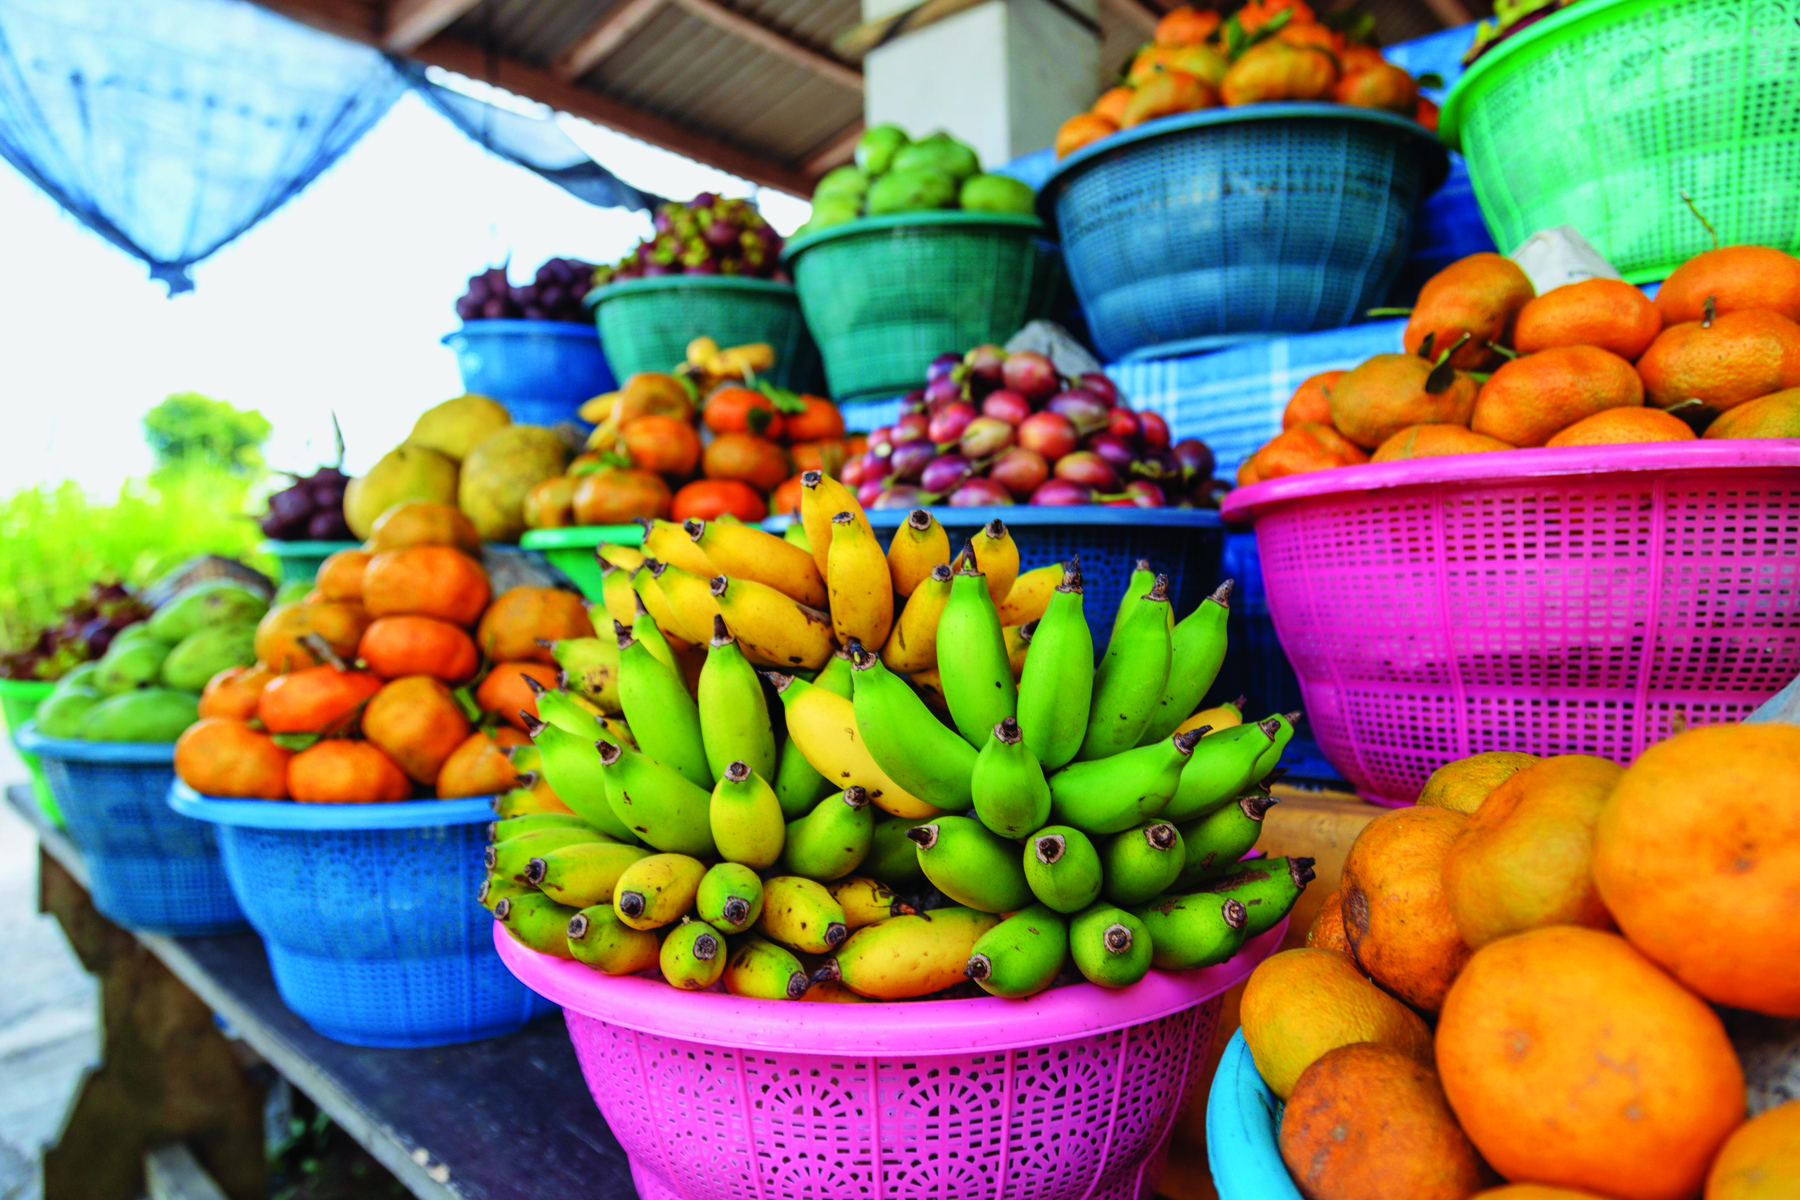 Fotografia. Frutas organizadas em cestas coloridas. Estão expostas em uma banca. À frente, bananas e laranjas. Ao fundo outras frutas coloridas.